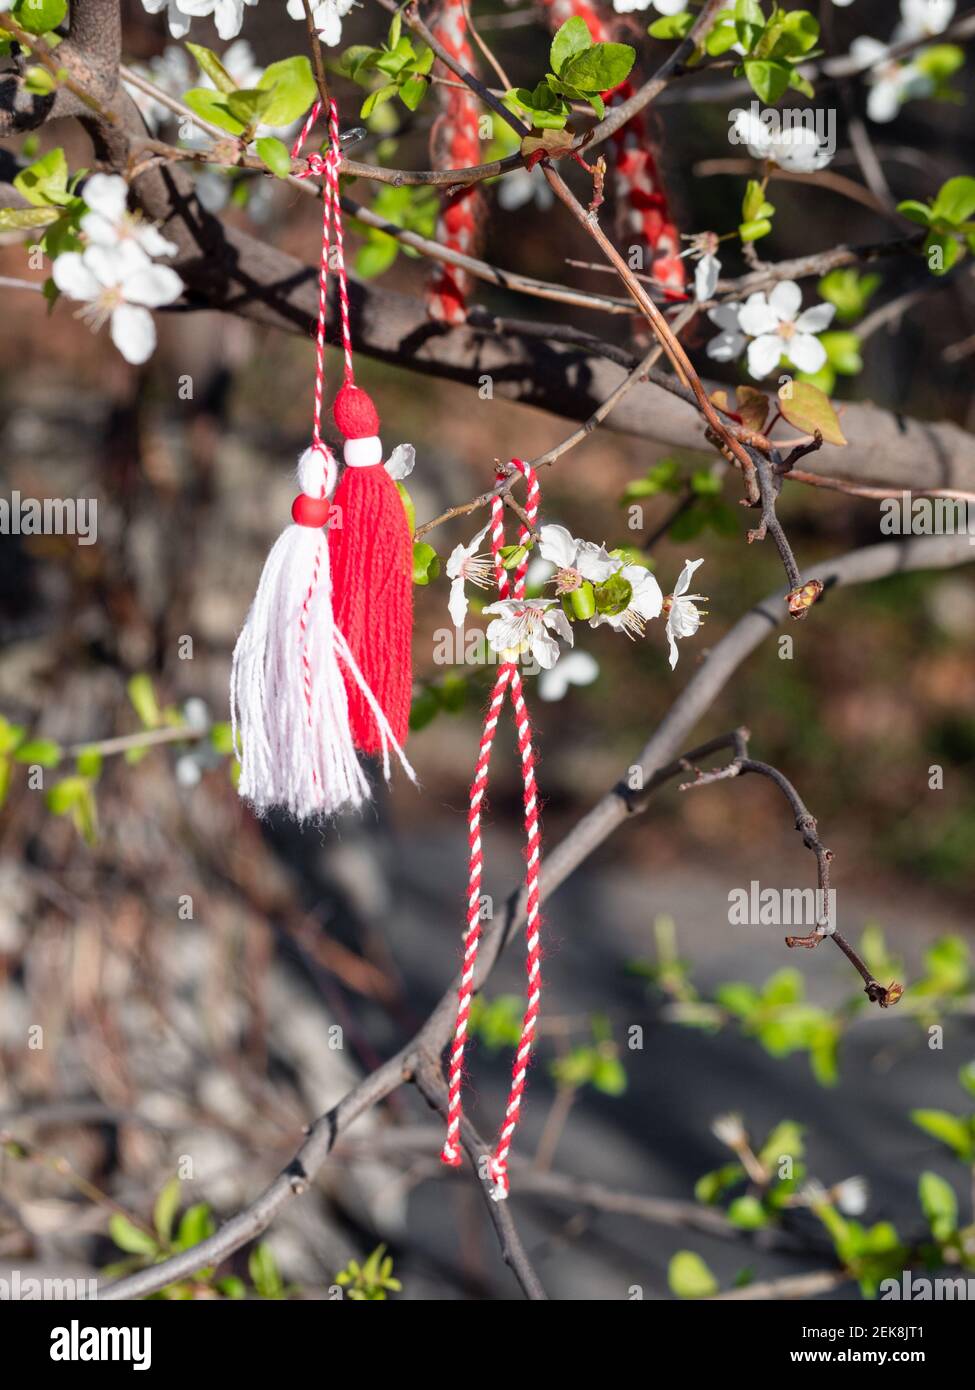 Braccialetti Martenitsa o Martisor rossi e bianchi, appesi sui rami  dell'albero in fiore - tradizione primaverile bulgara e rumena Foto stock -  Alamy